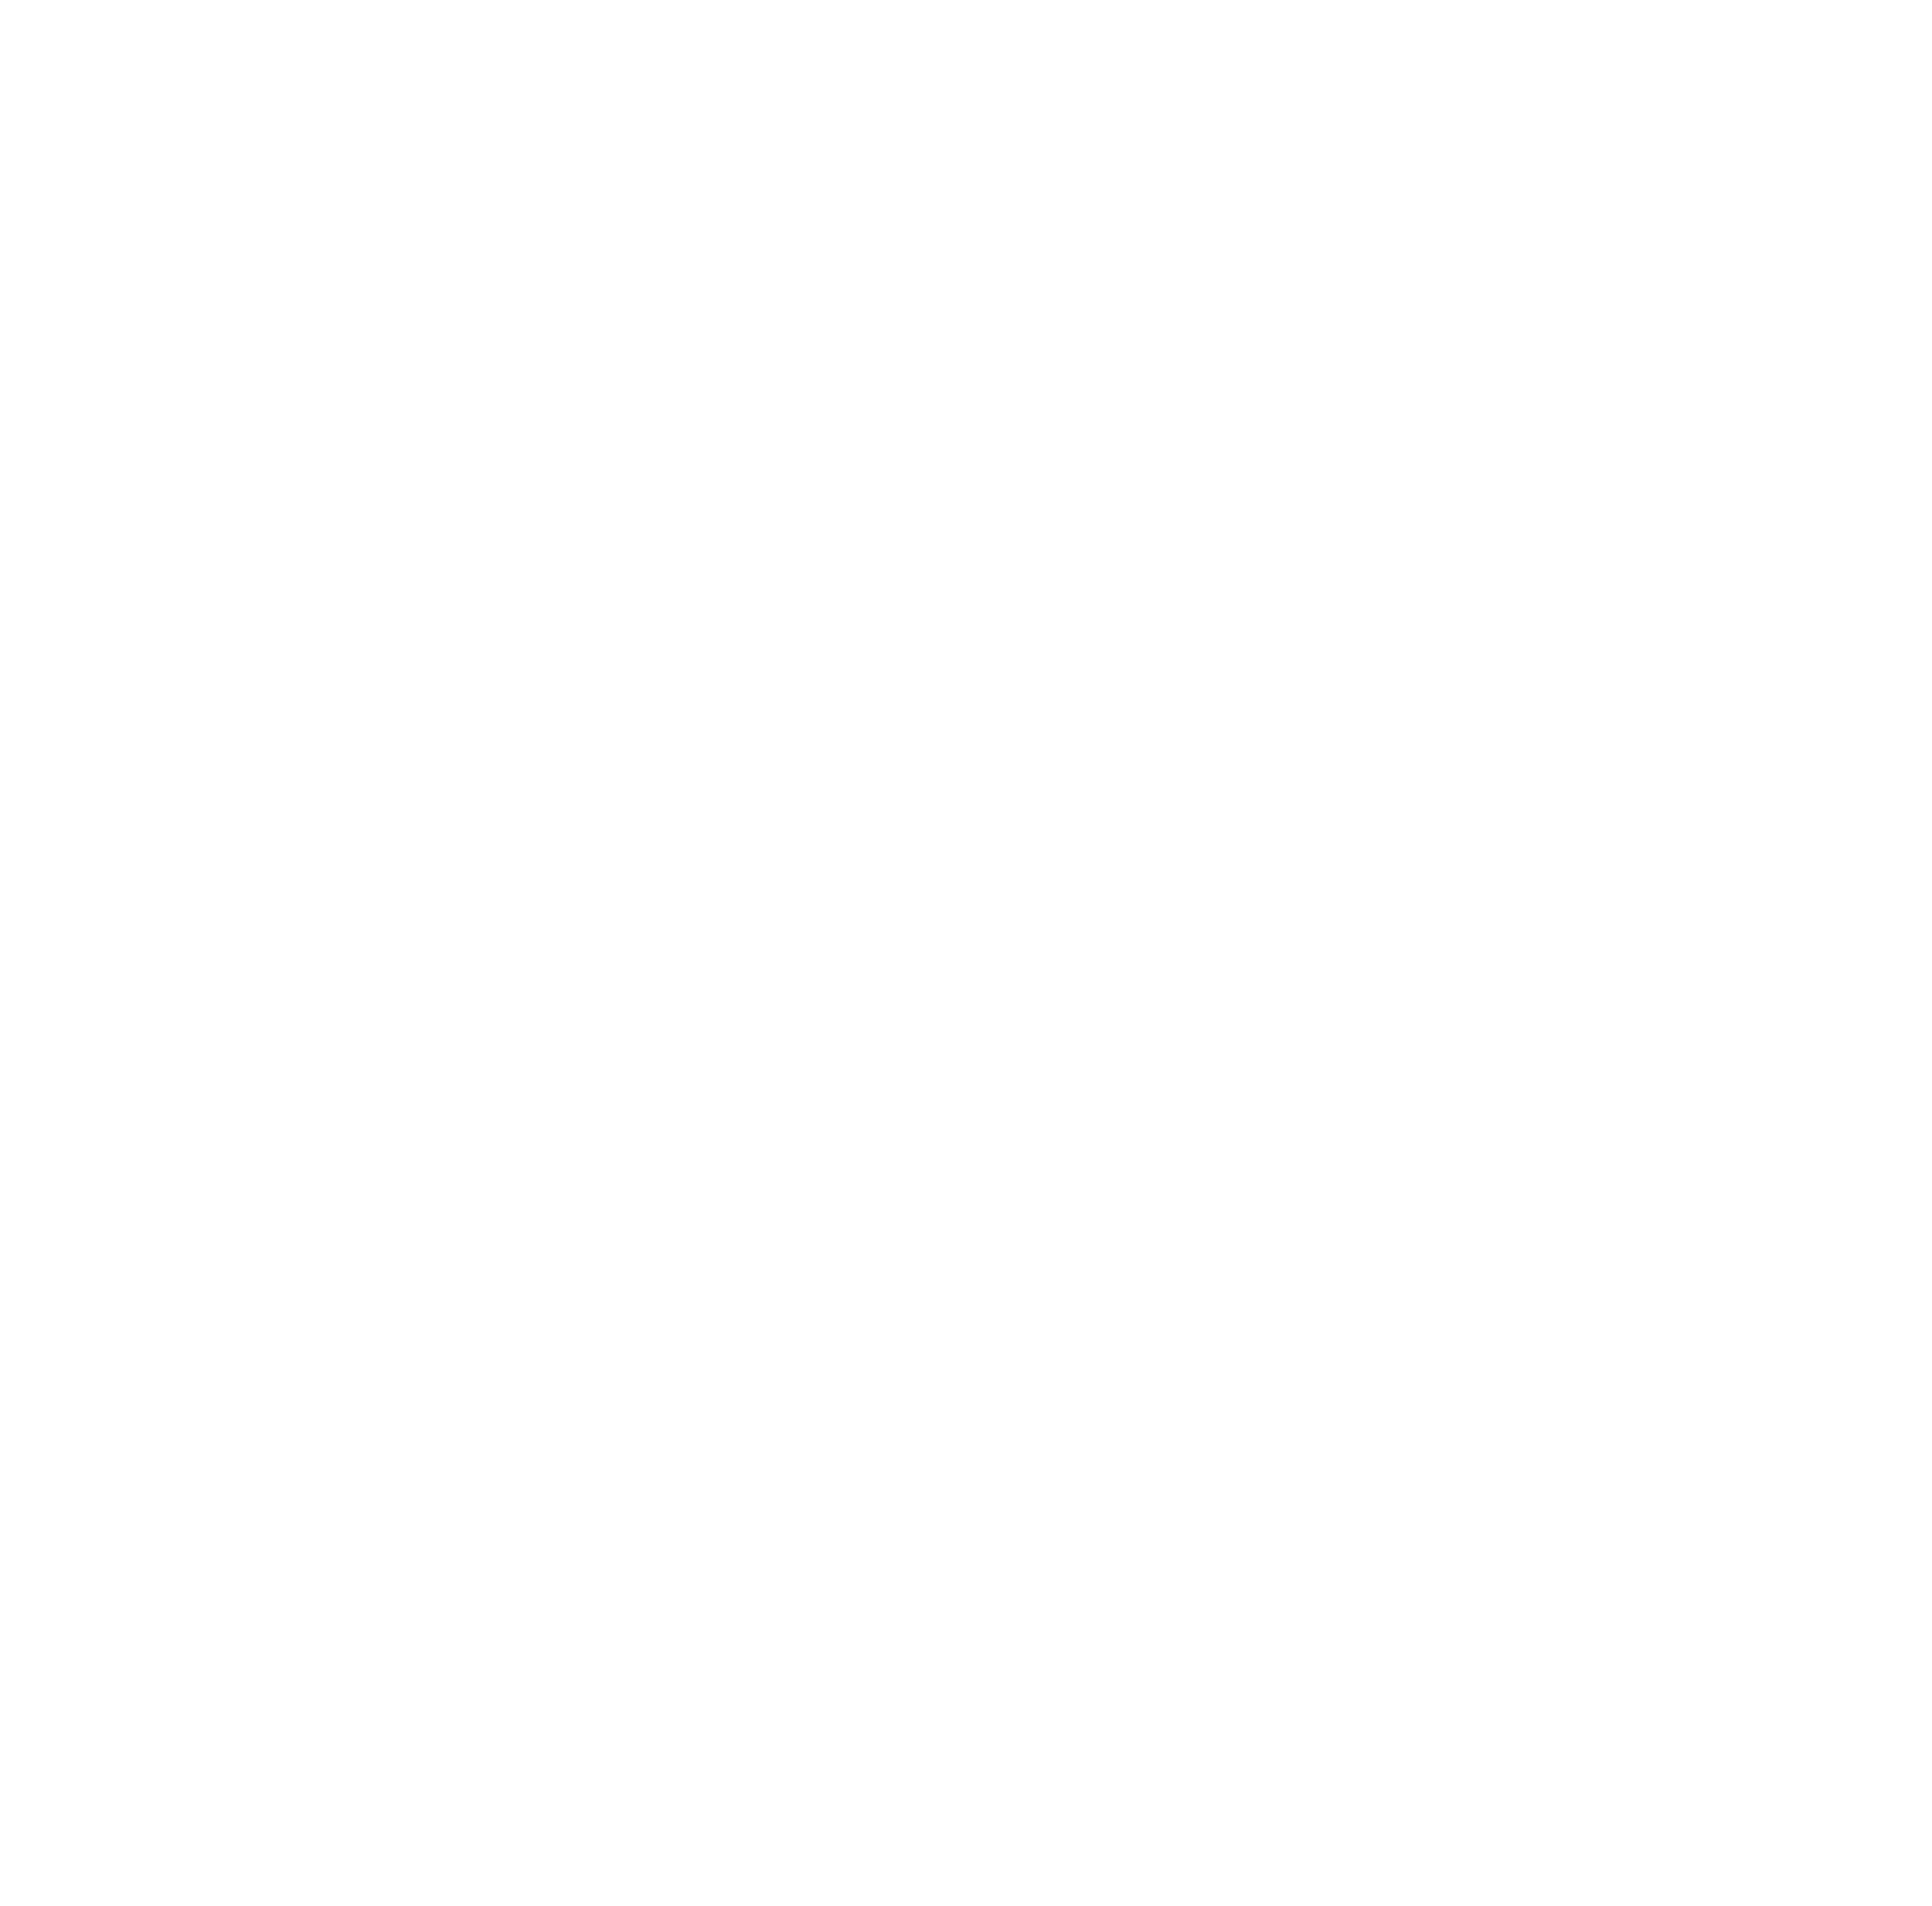 Rita & Aurora logo